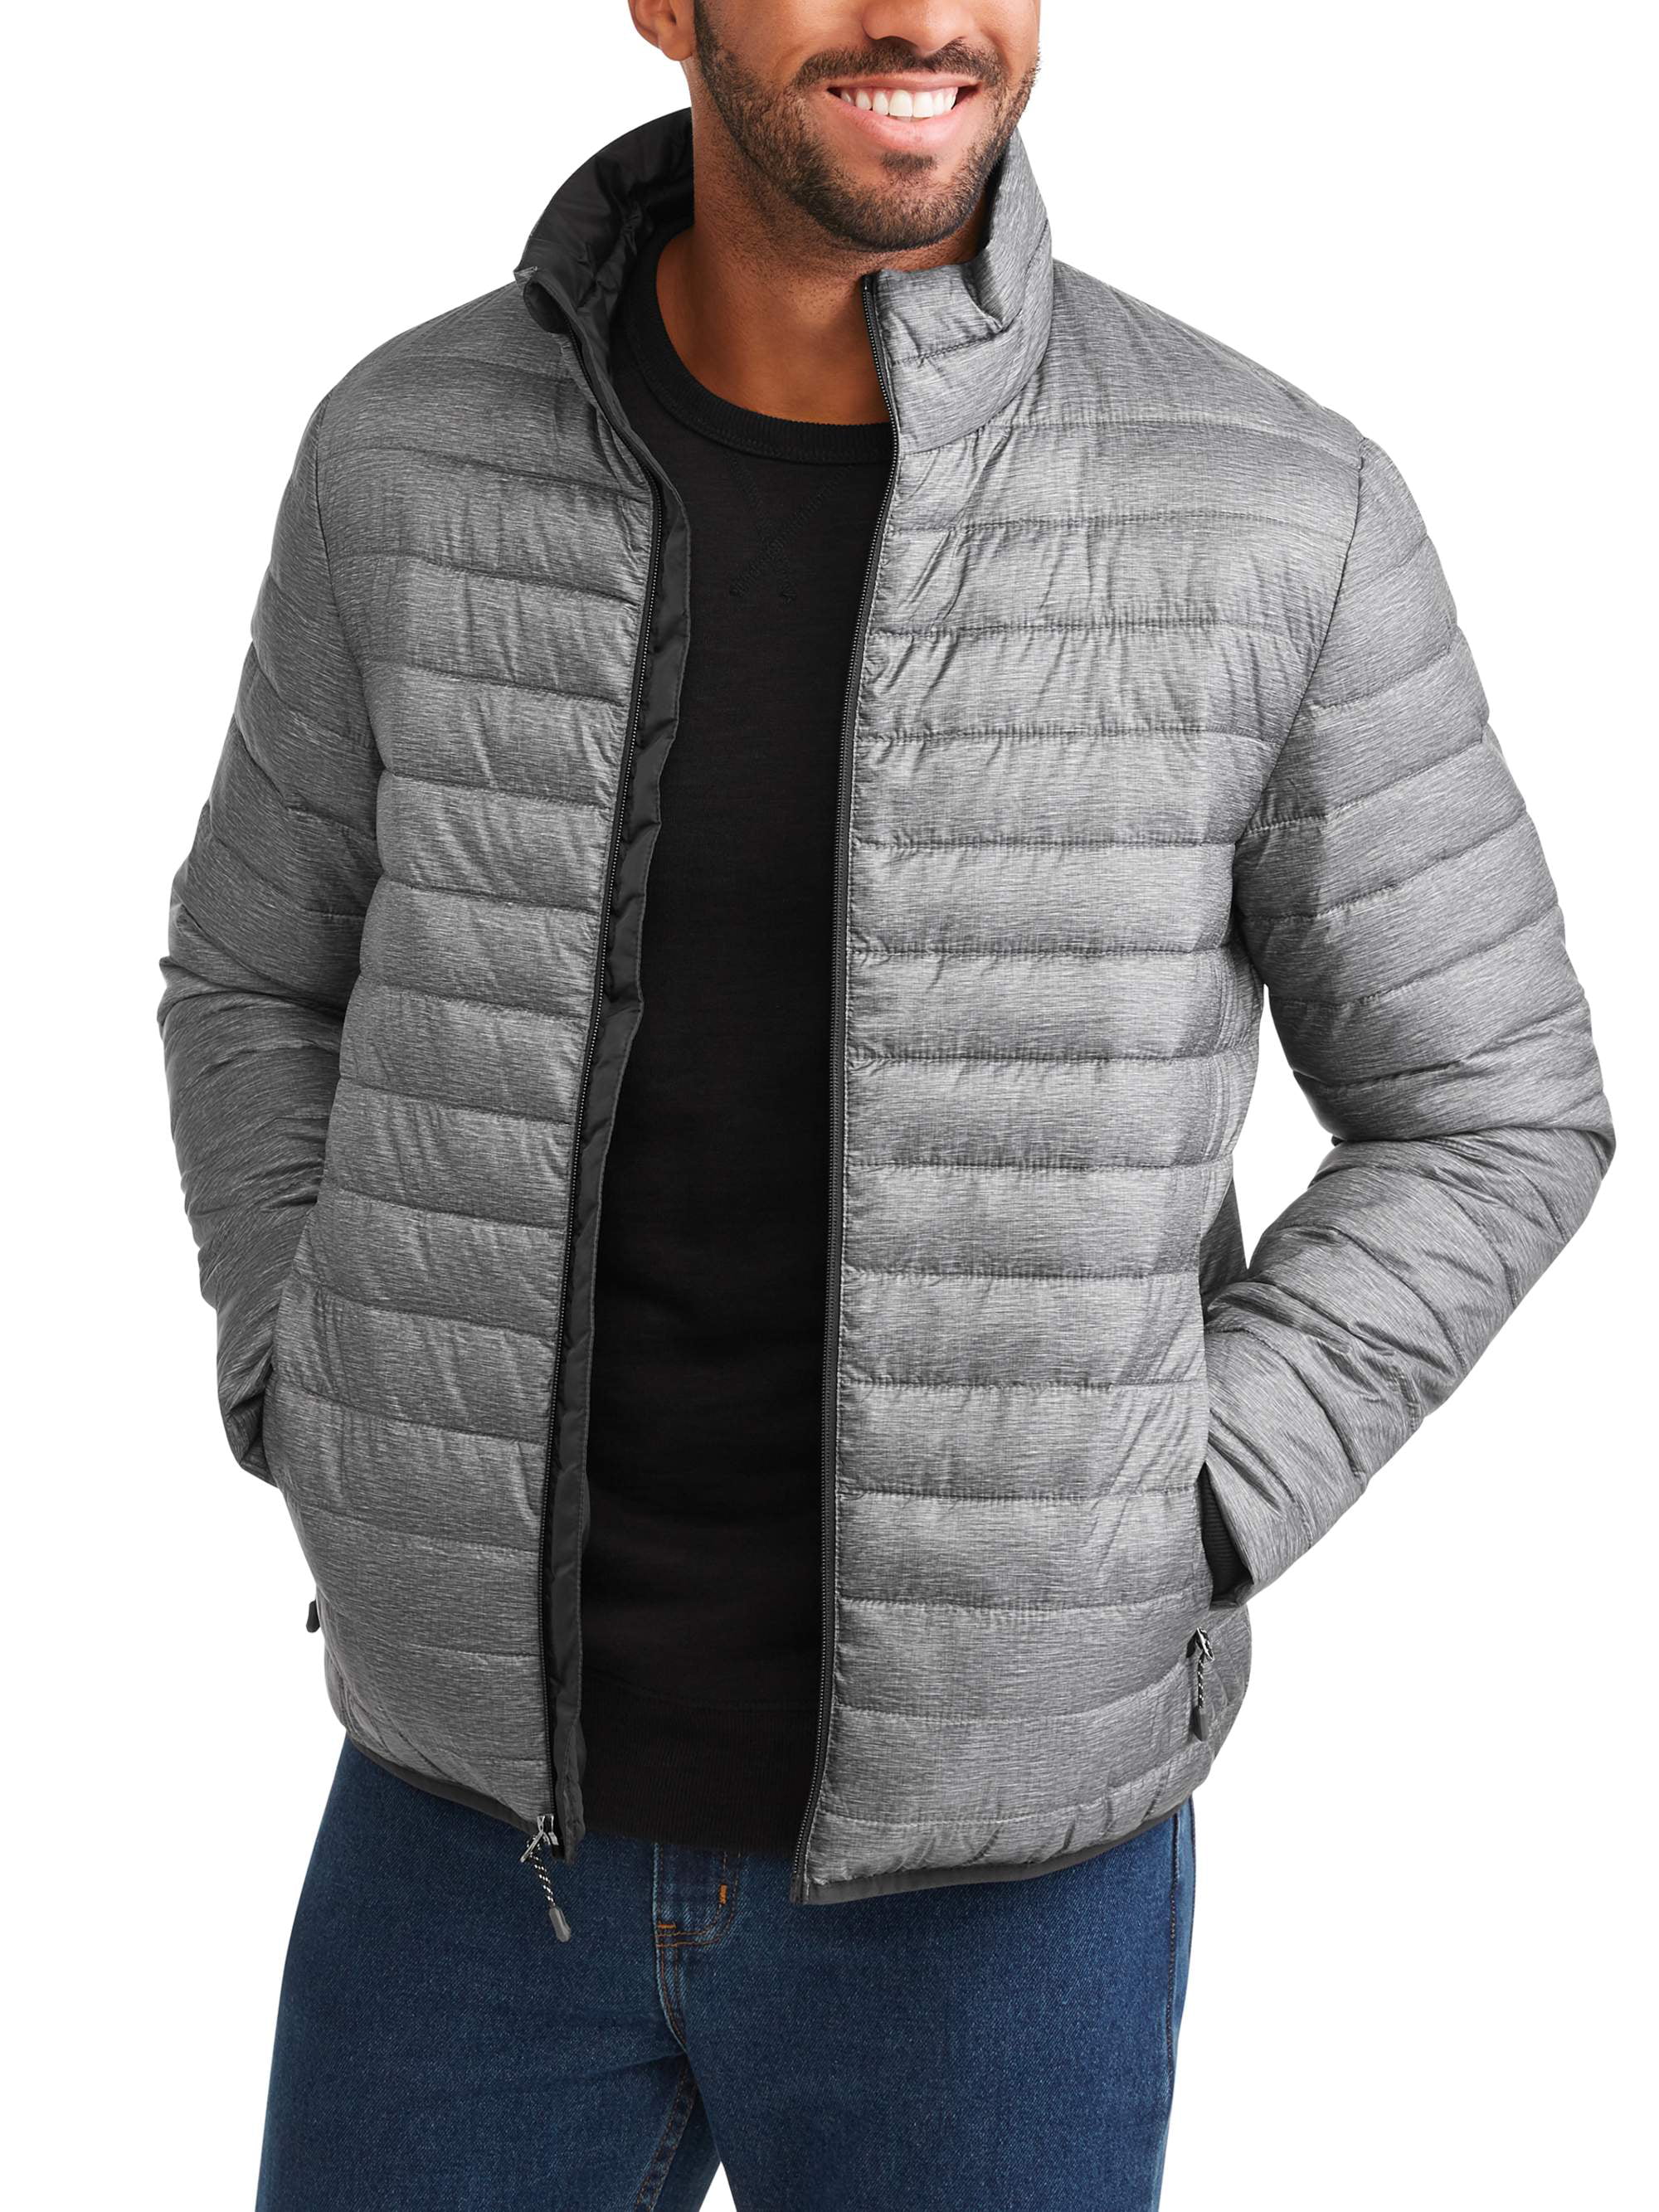 Swiss+Tech Men's Puffer Jacket Up To Size 5Xl - Walmart.com